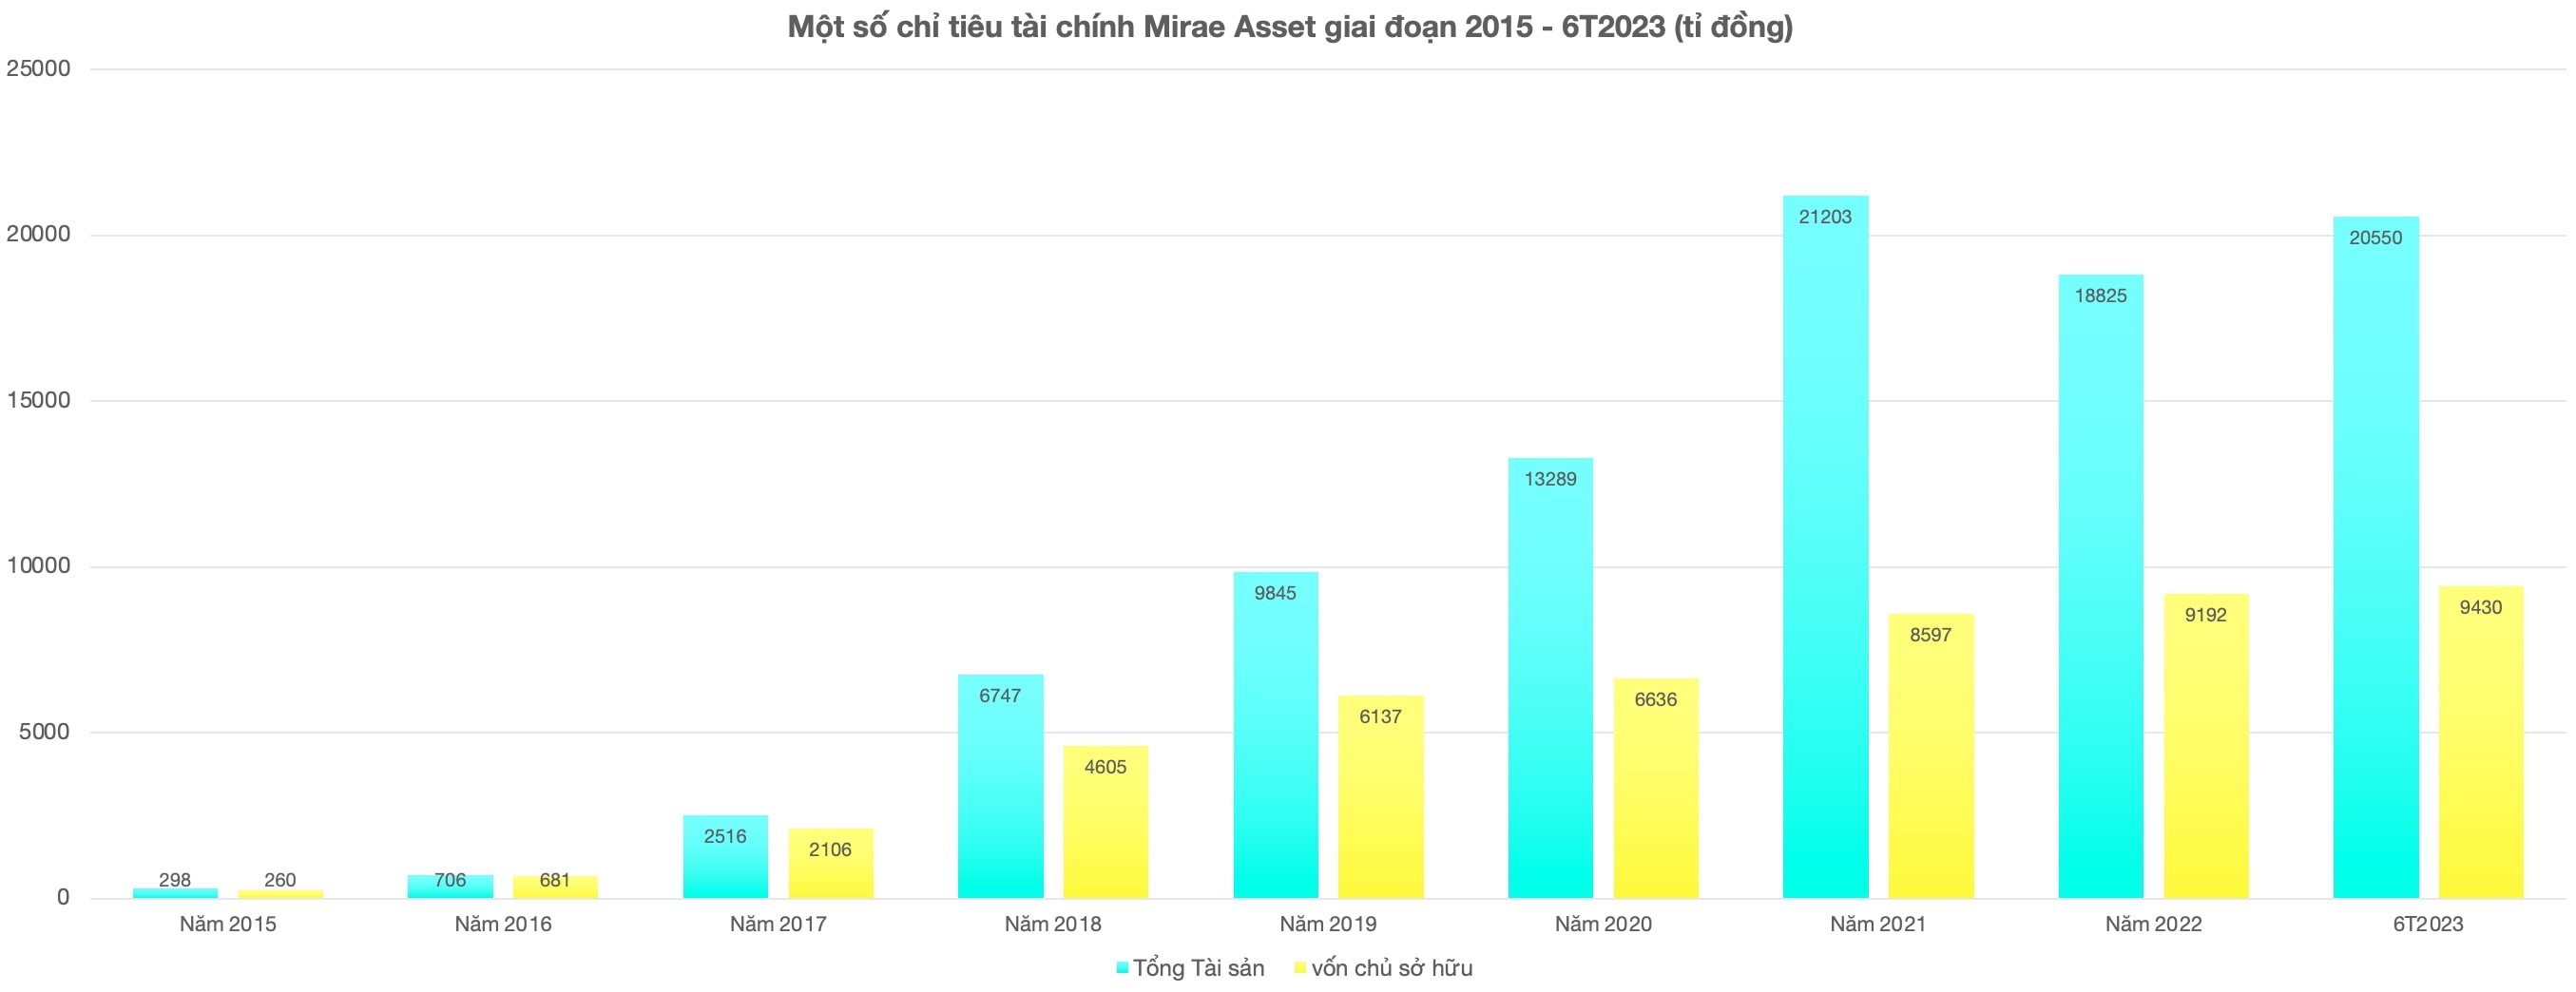 Tài sản Mirae Asset tăng mạnh trong những năm qua. Ảnh chụp màn hình